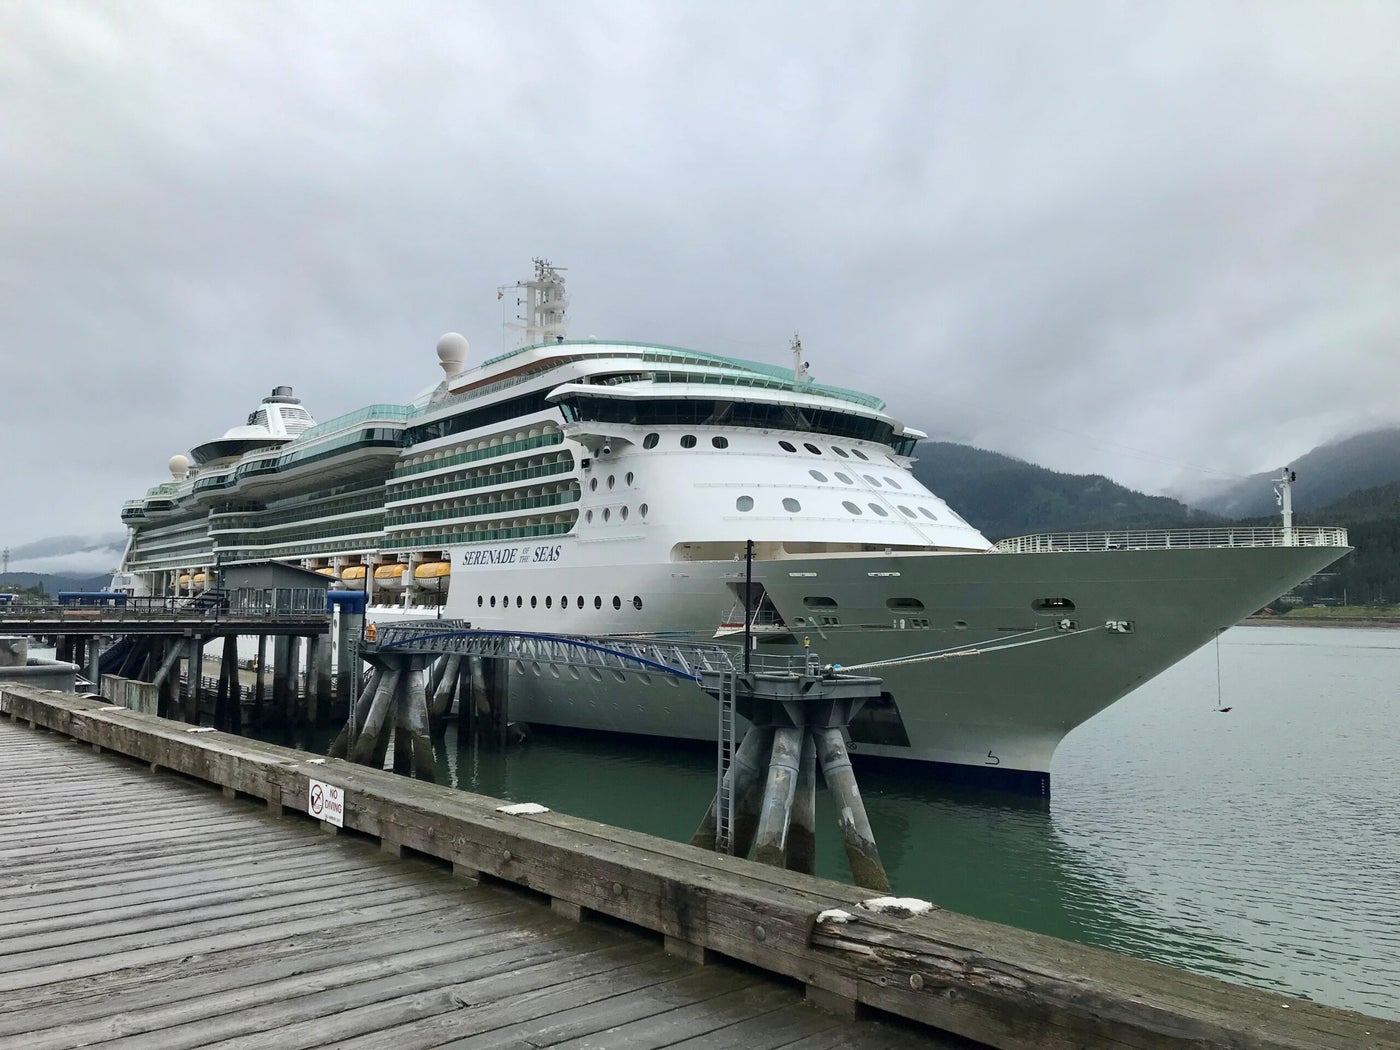 cruise ships in juneau alaska today